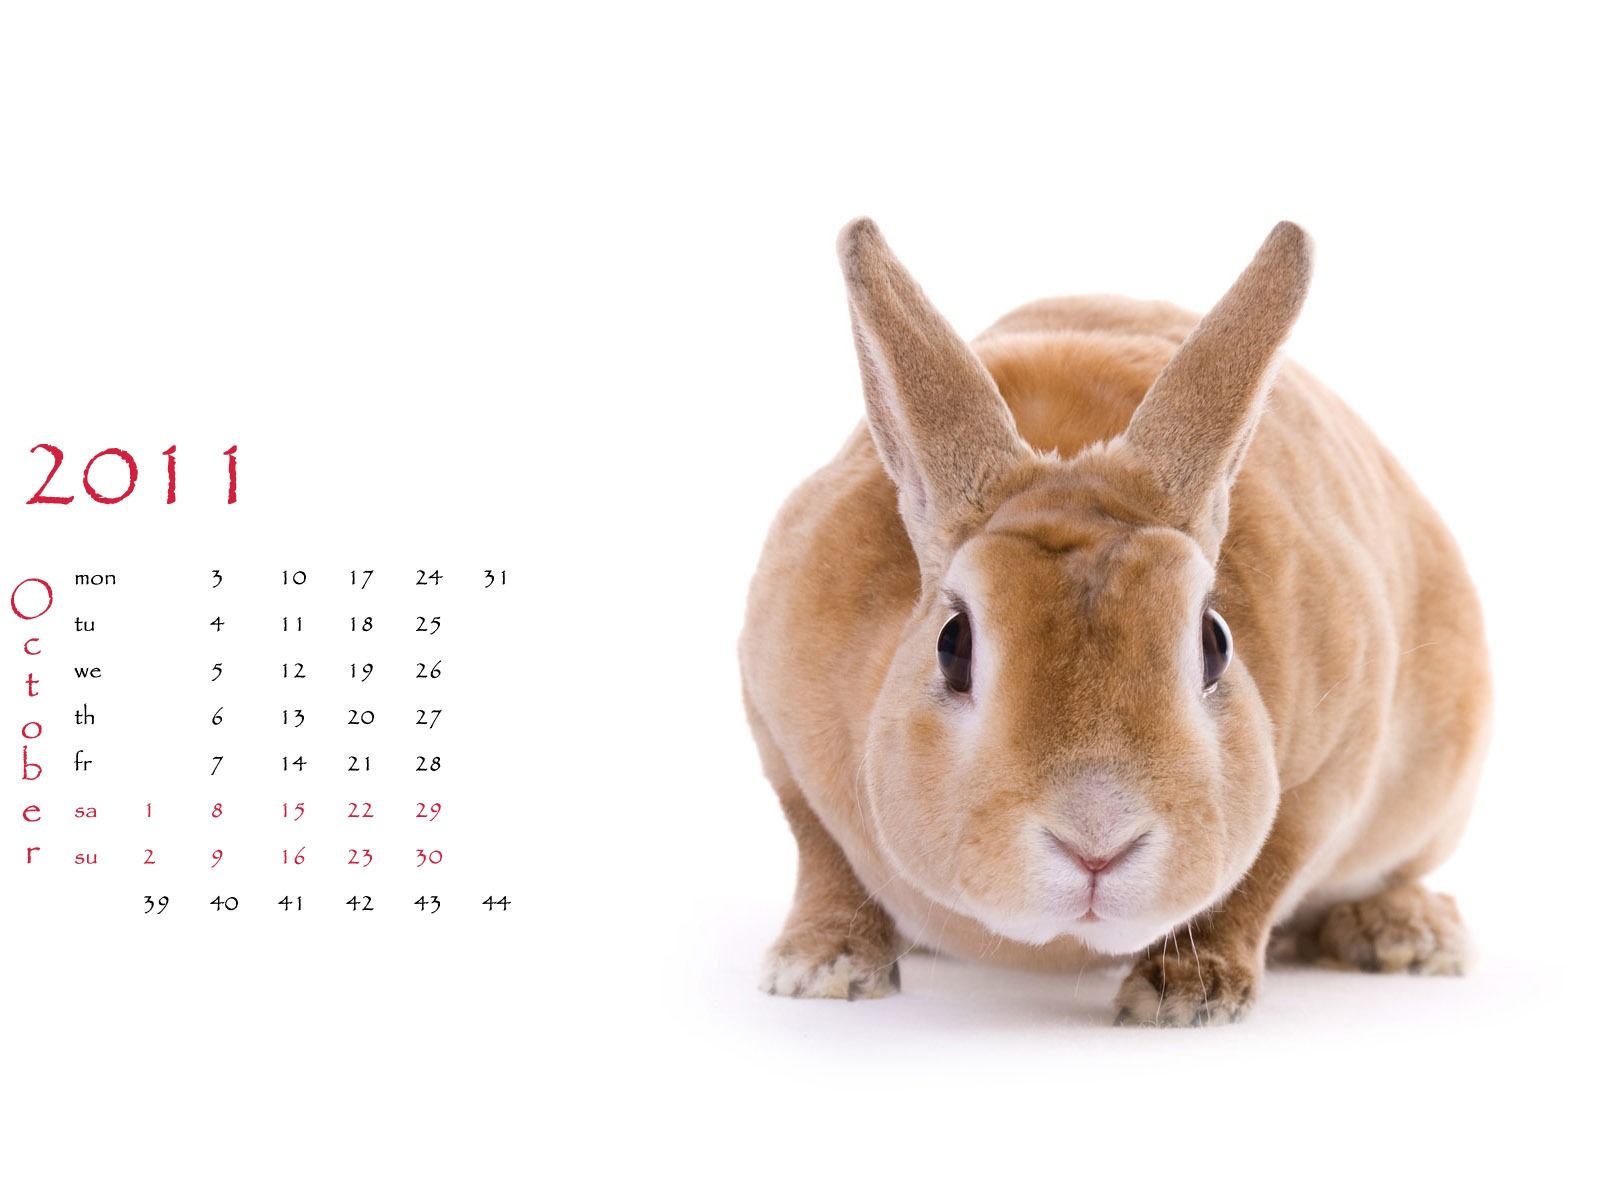 Année du papier peint Rabbit calendrier 2011 (1) #10 - 1600x1200